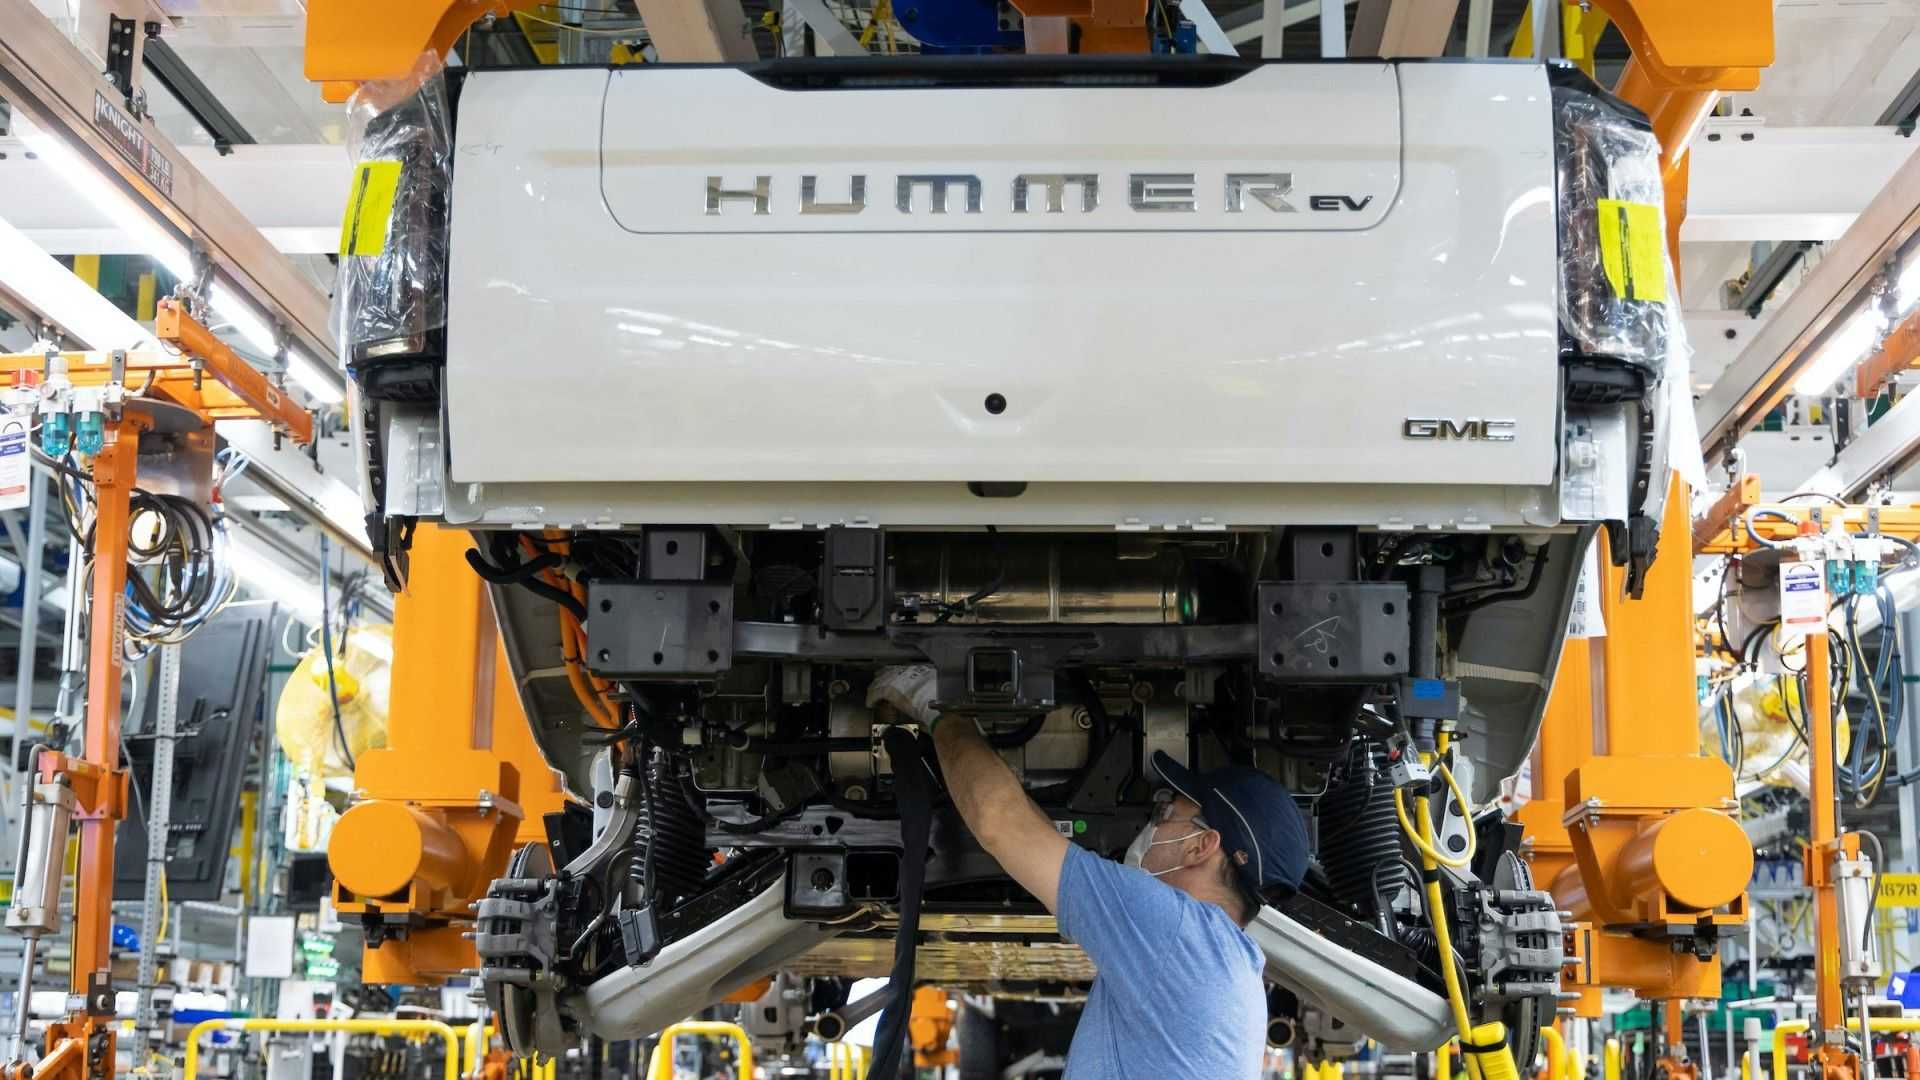 Gmc Hummer Ev Production Back